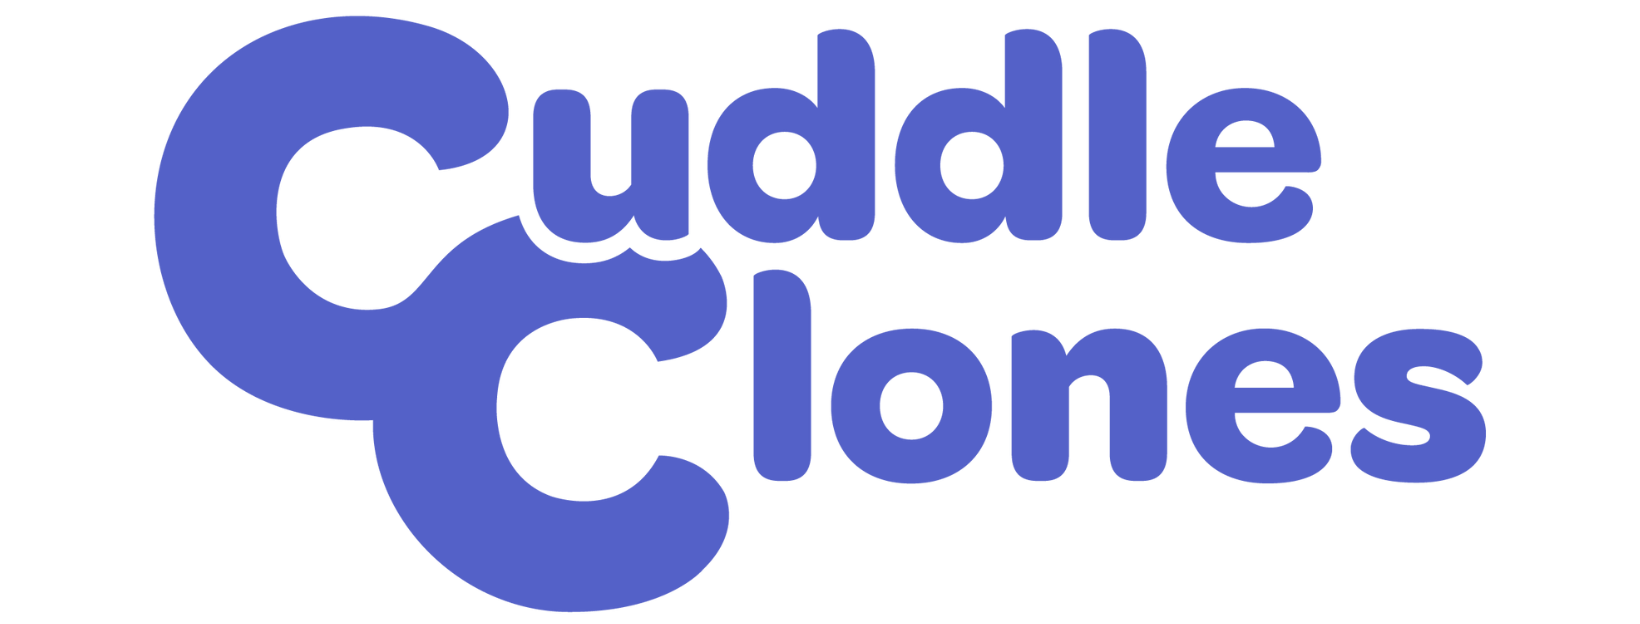 Cuddle Clones logo